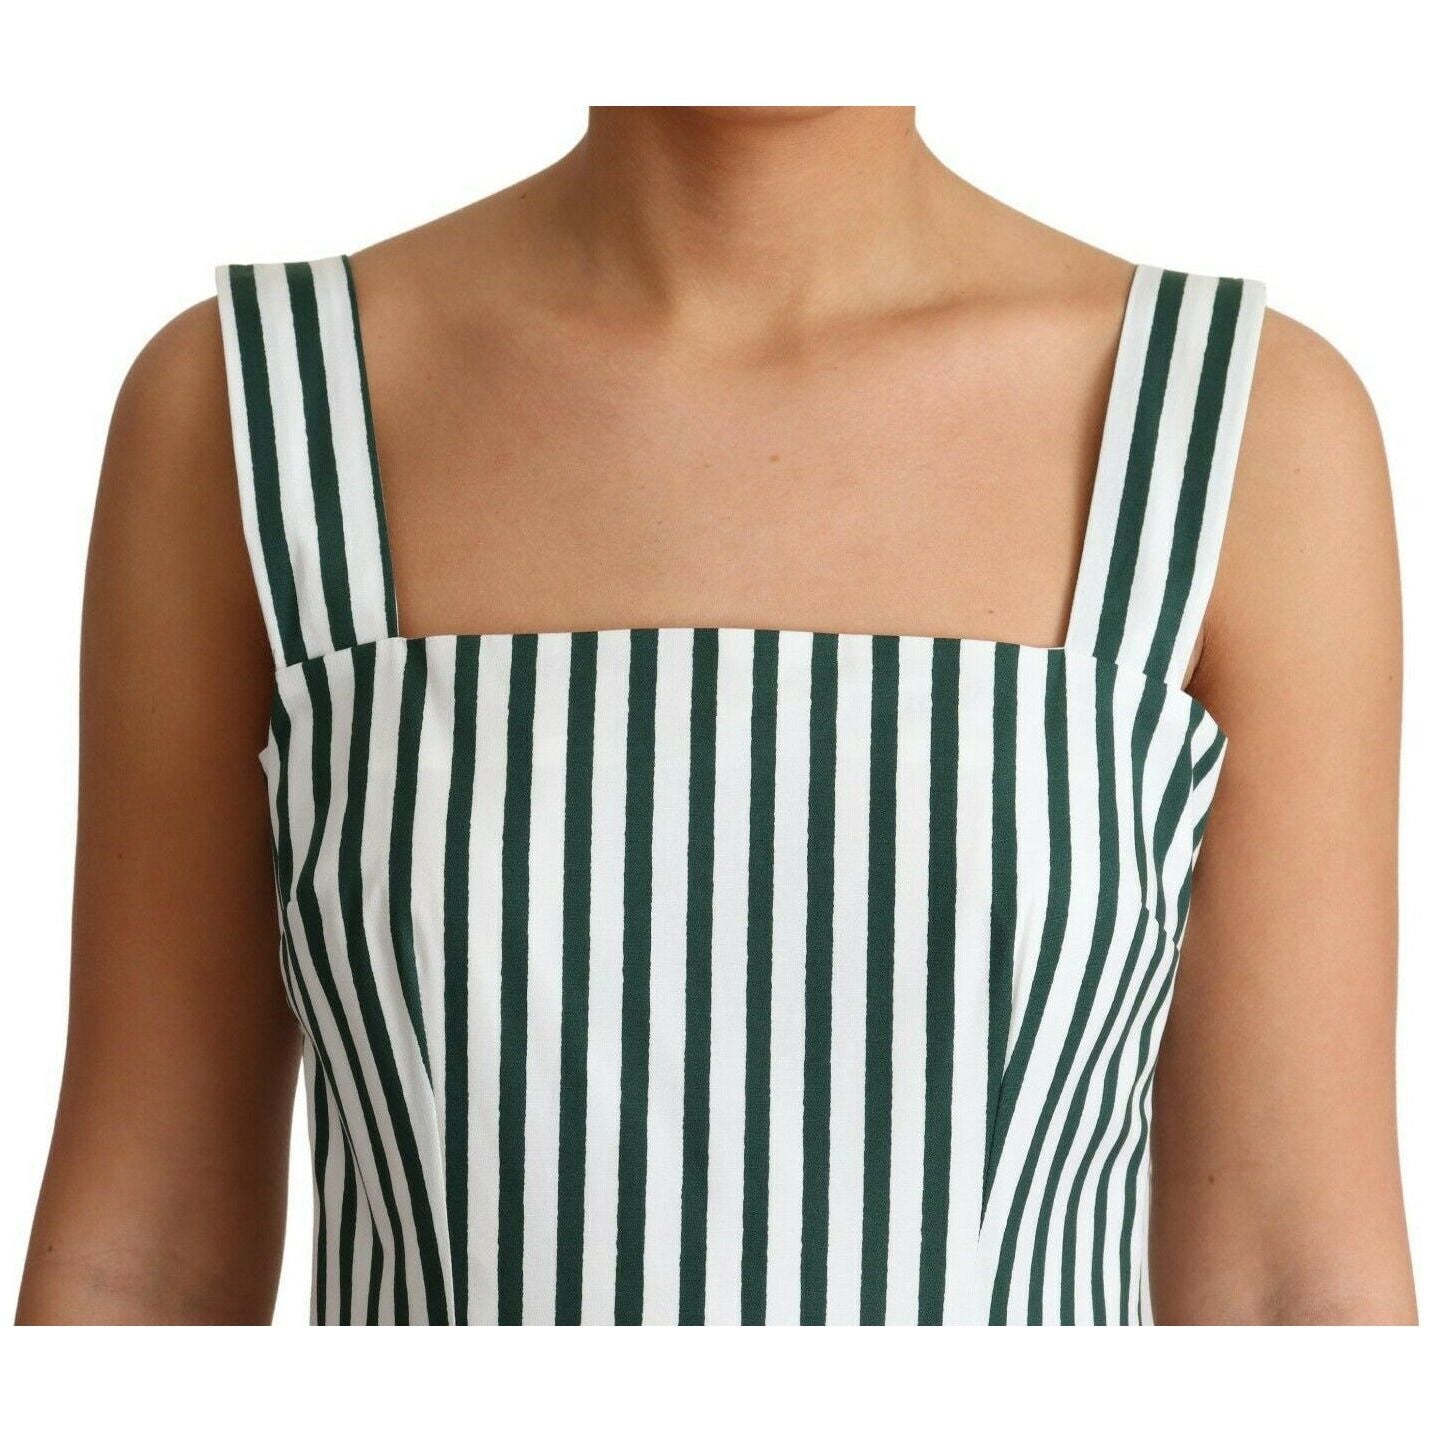 Dolce & Gabbana | Green Striped Cotton A-Line Dress WOMAN DRESSES | McRichard Designer Brands